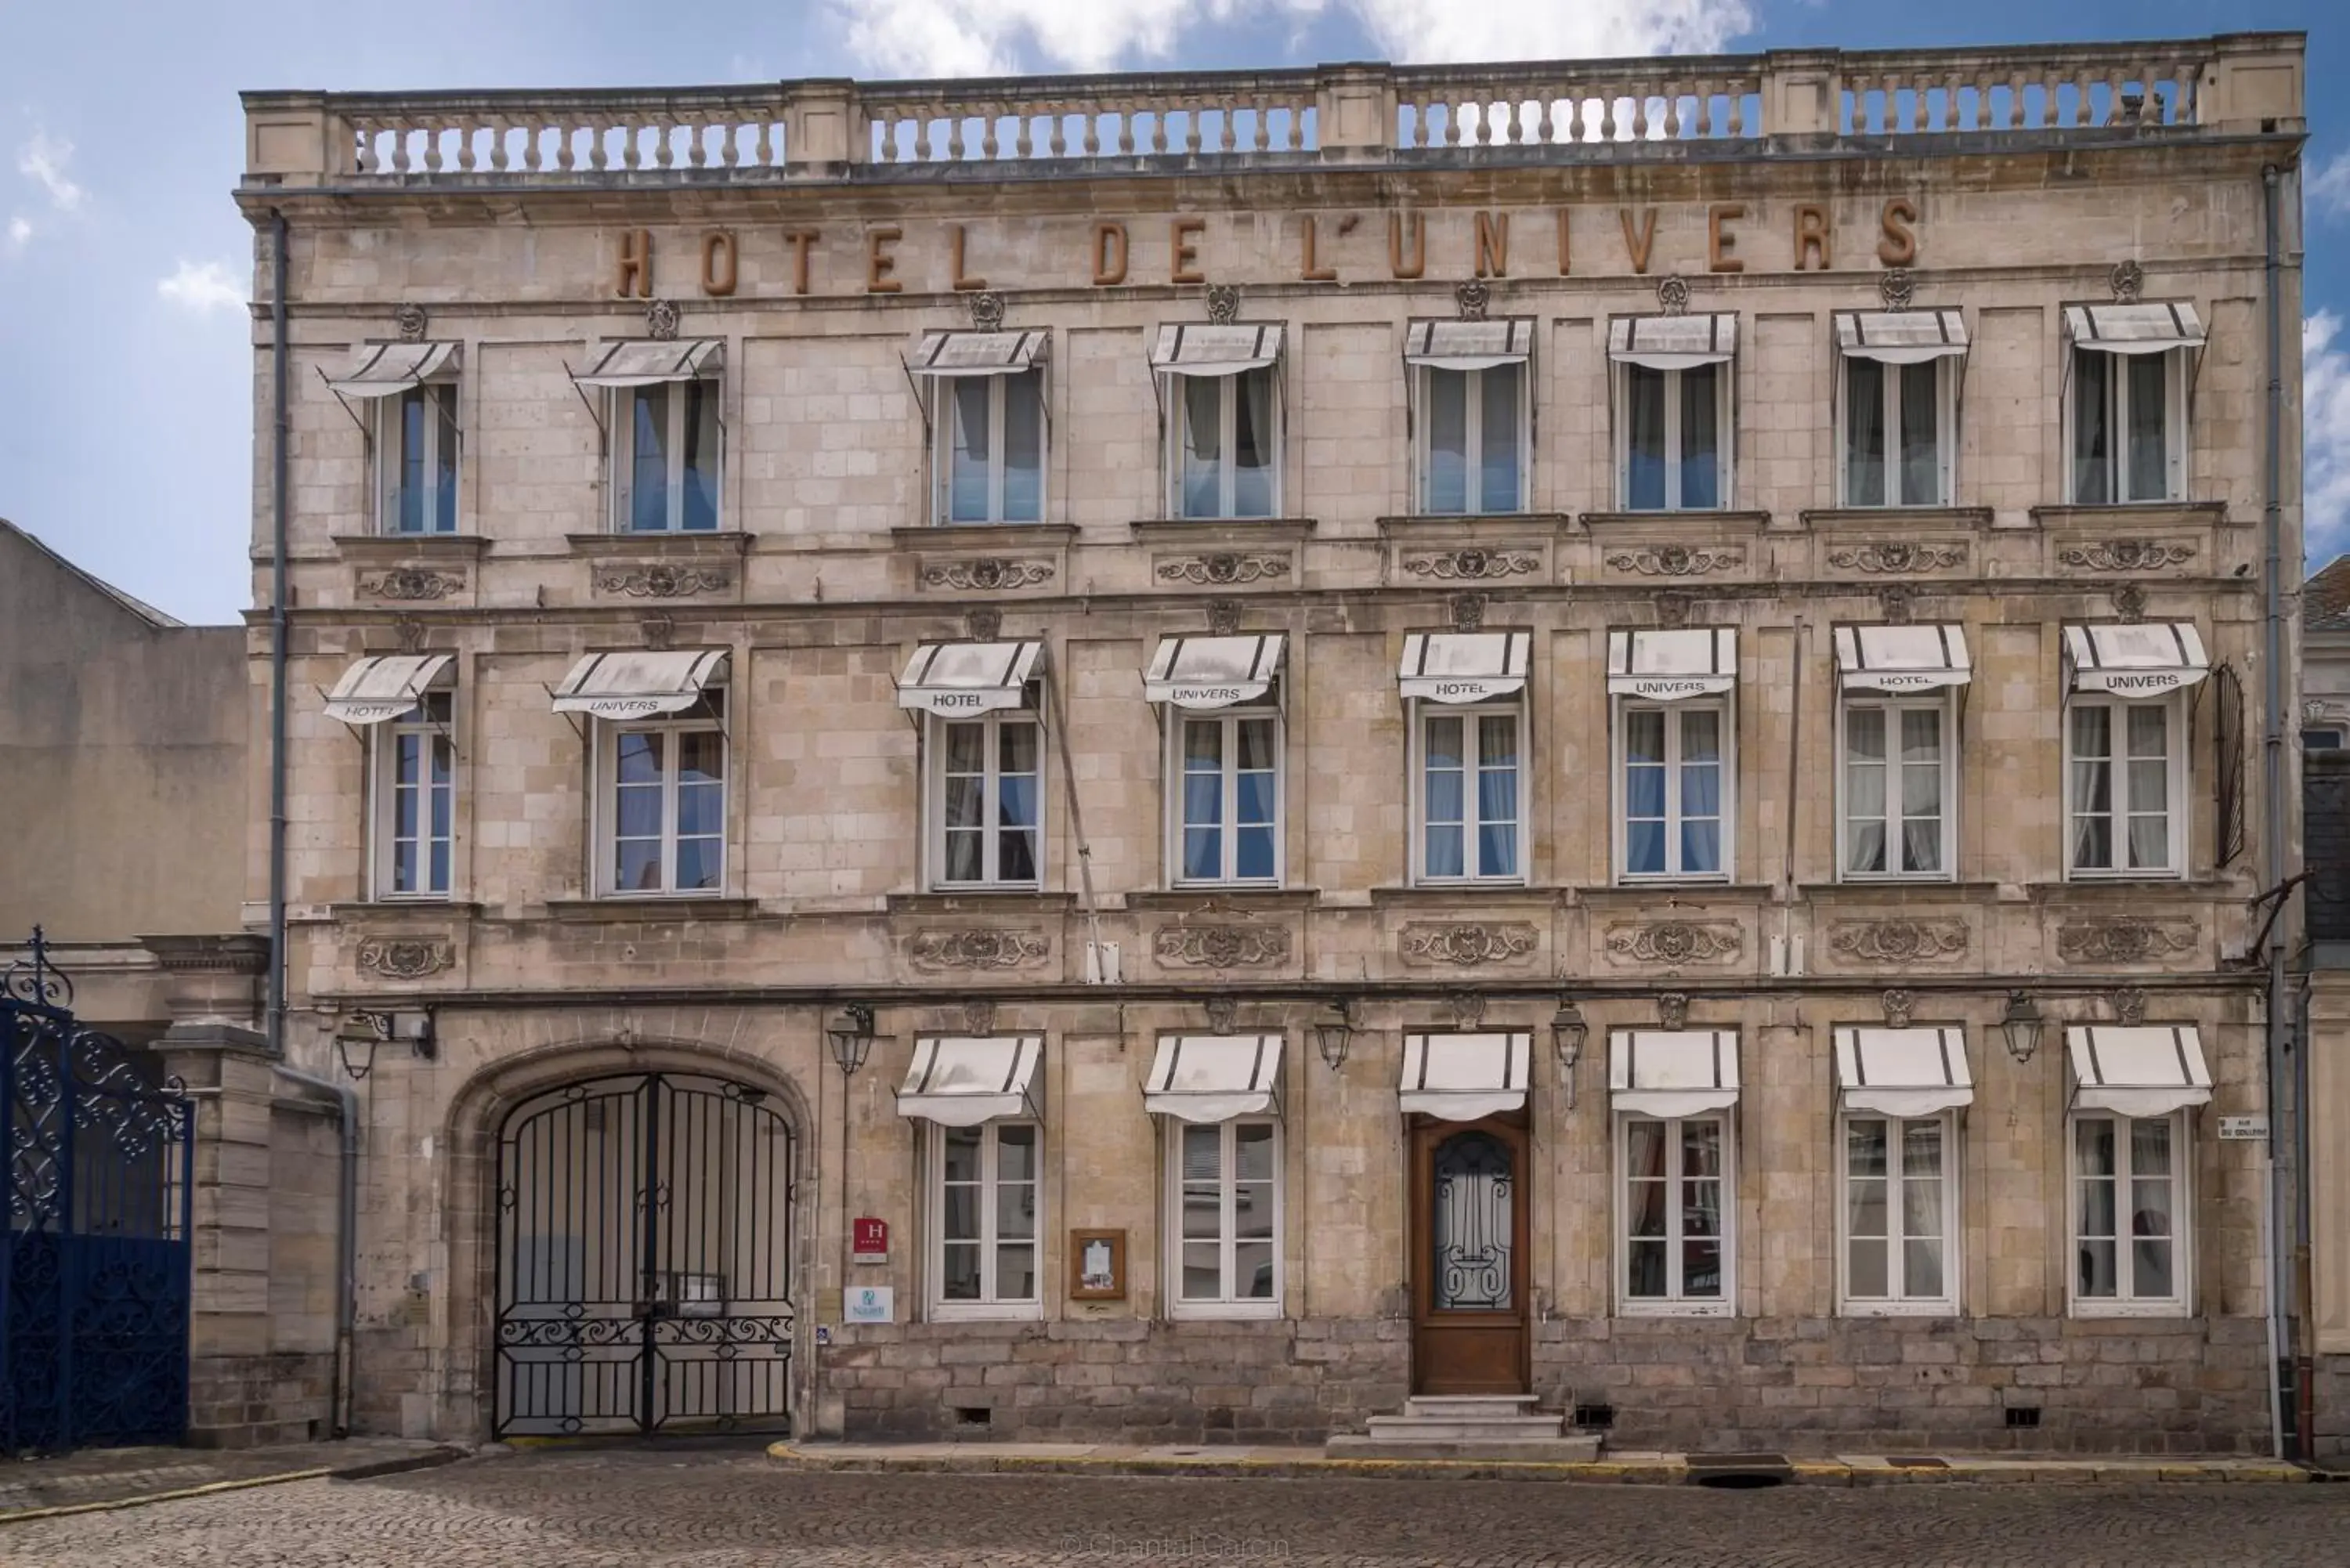 Property building in Hôtel de L'univers